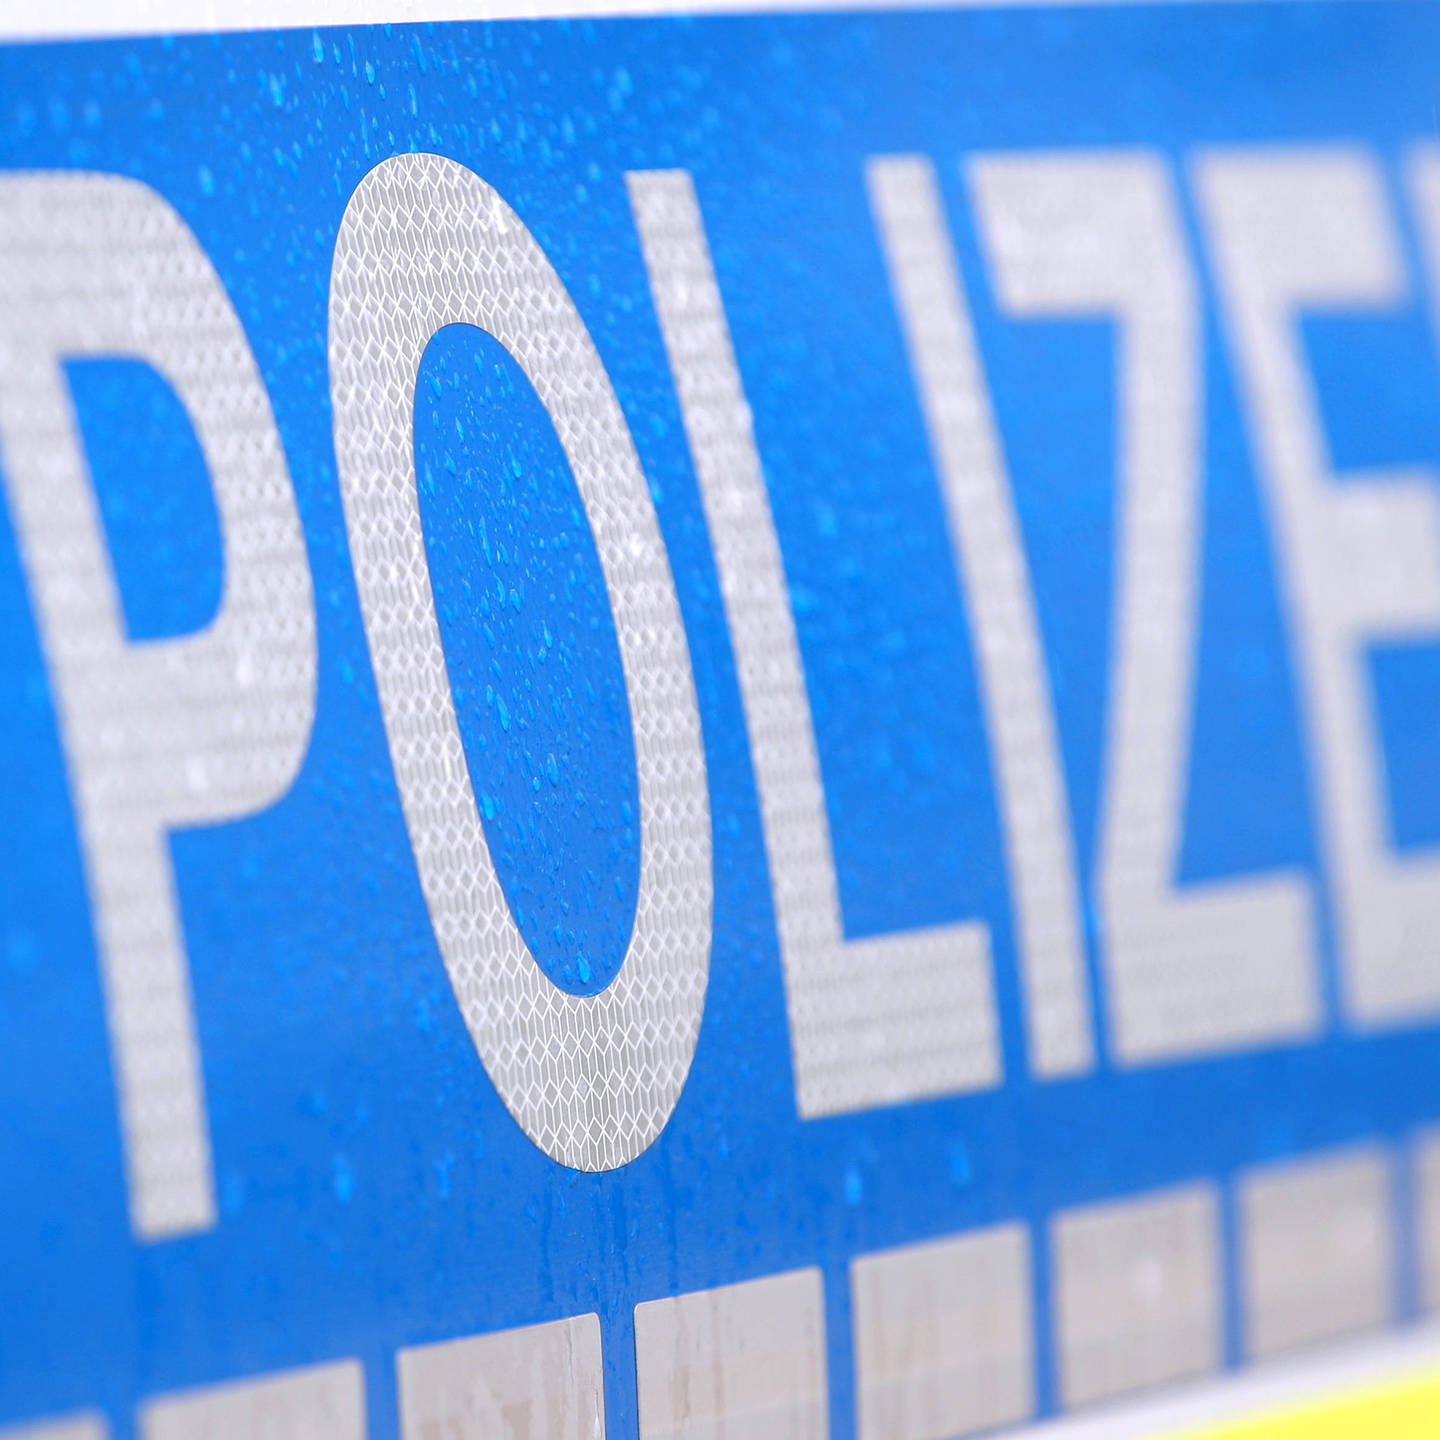 Überfall in Ulm: Mann bedroht Seniorin in ihrem Haus - SWR Aktuell